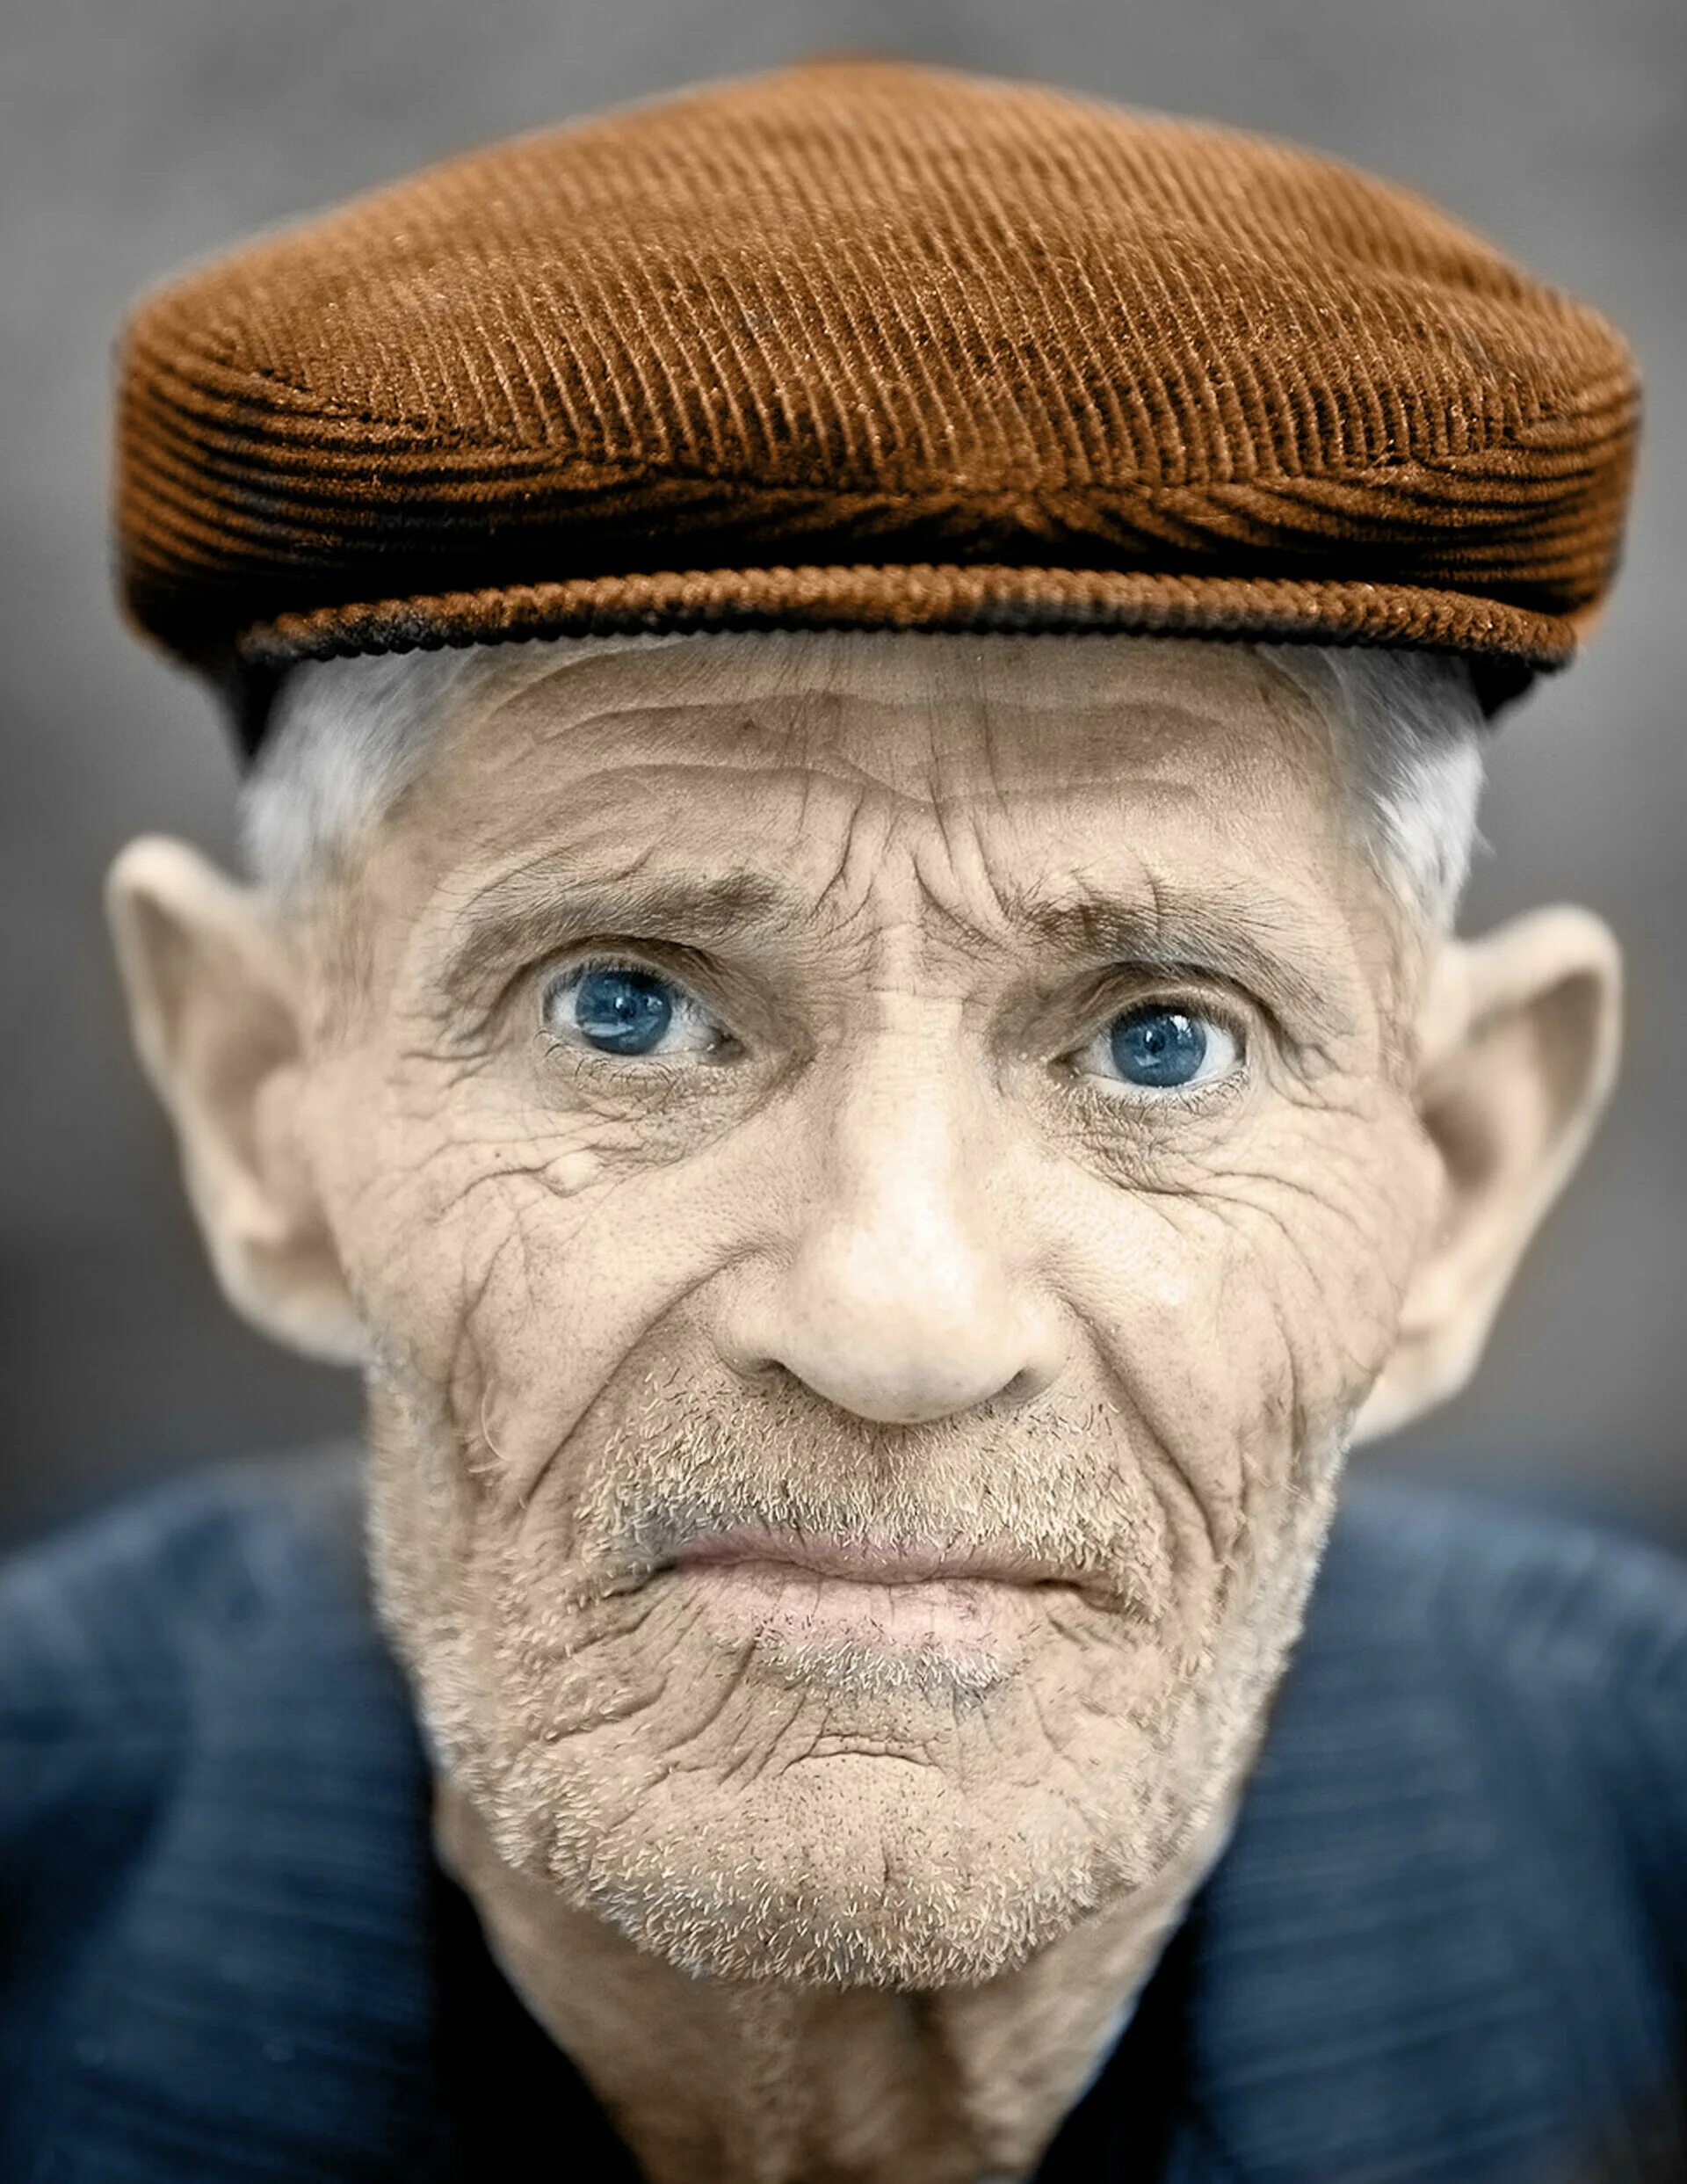 Лицо старика. Портрет человека. Пожилой мужчина. Фотопортрет старика. Tiff old